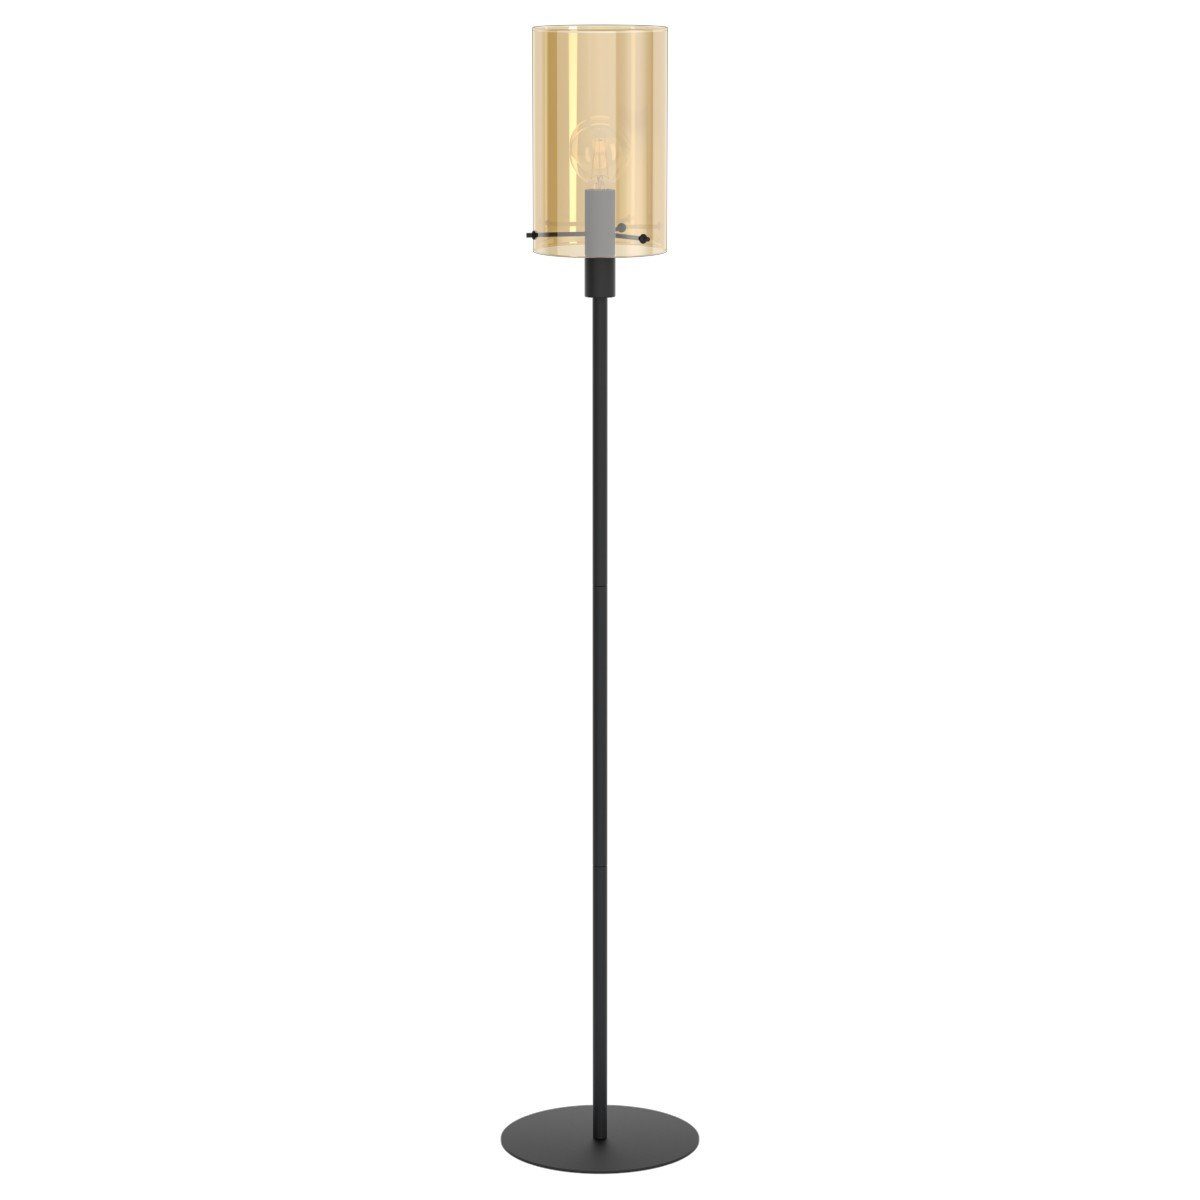 EGLO Stehlampe Polverara, ohne Leuchtmittel, LED-Retrofit oder Halogen, Akzentbeleuchtung fürs Wohnzimmer, Höhe ca. 155 cm, Amber-Glas